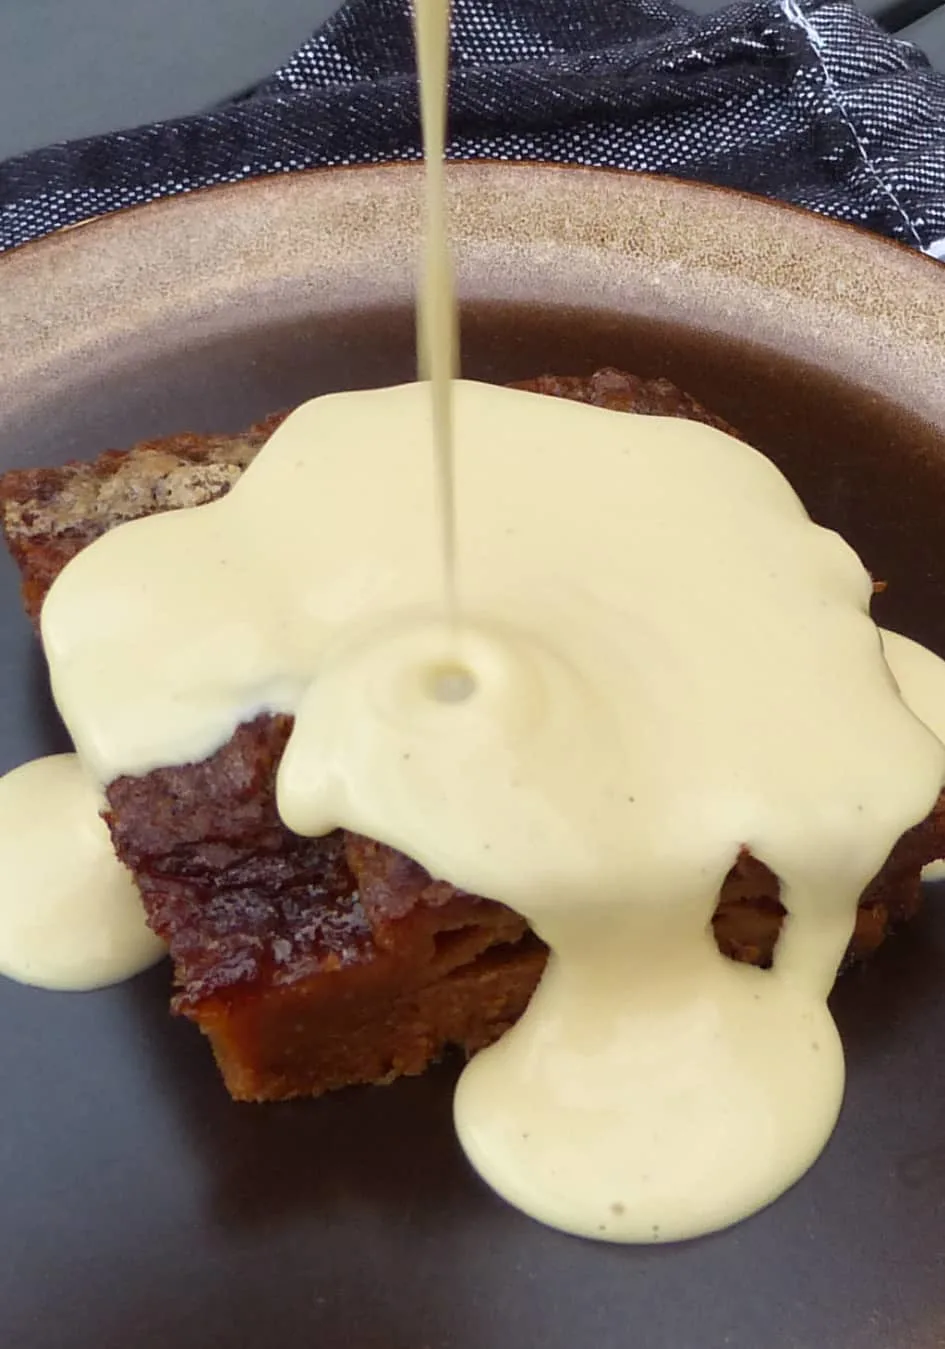 Ein Bild von einem süßen Dessert: Malva Pudding, über den gerade köstliche Vanillesoße gegossen wird.